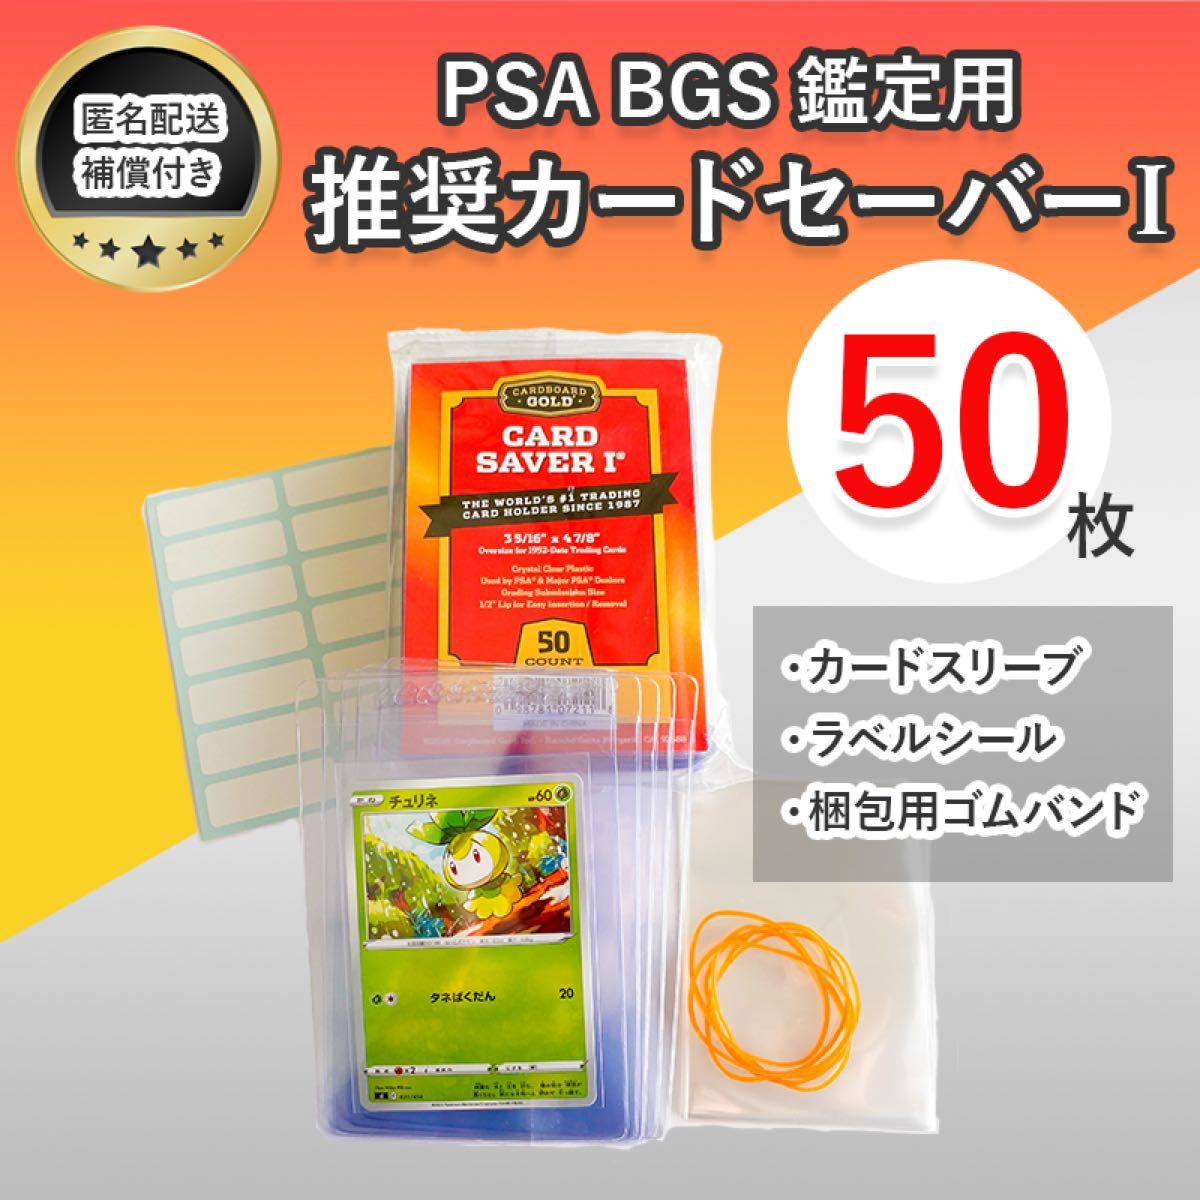 2000枚セット PSA鑑定用 カードセイバー カードセーバー 新品未開封